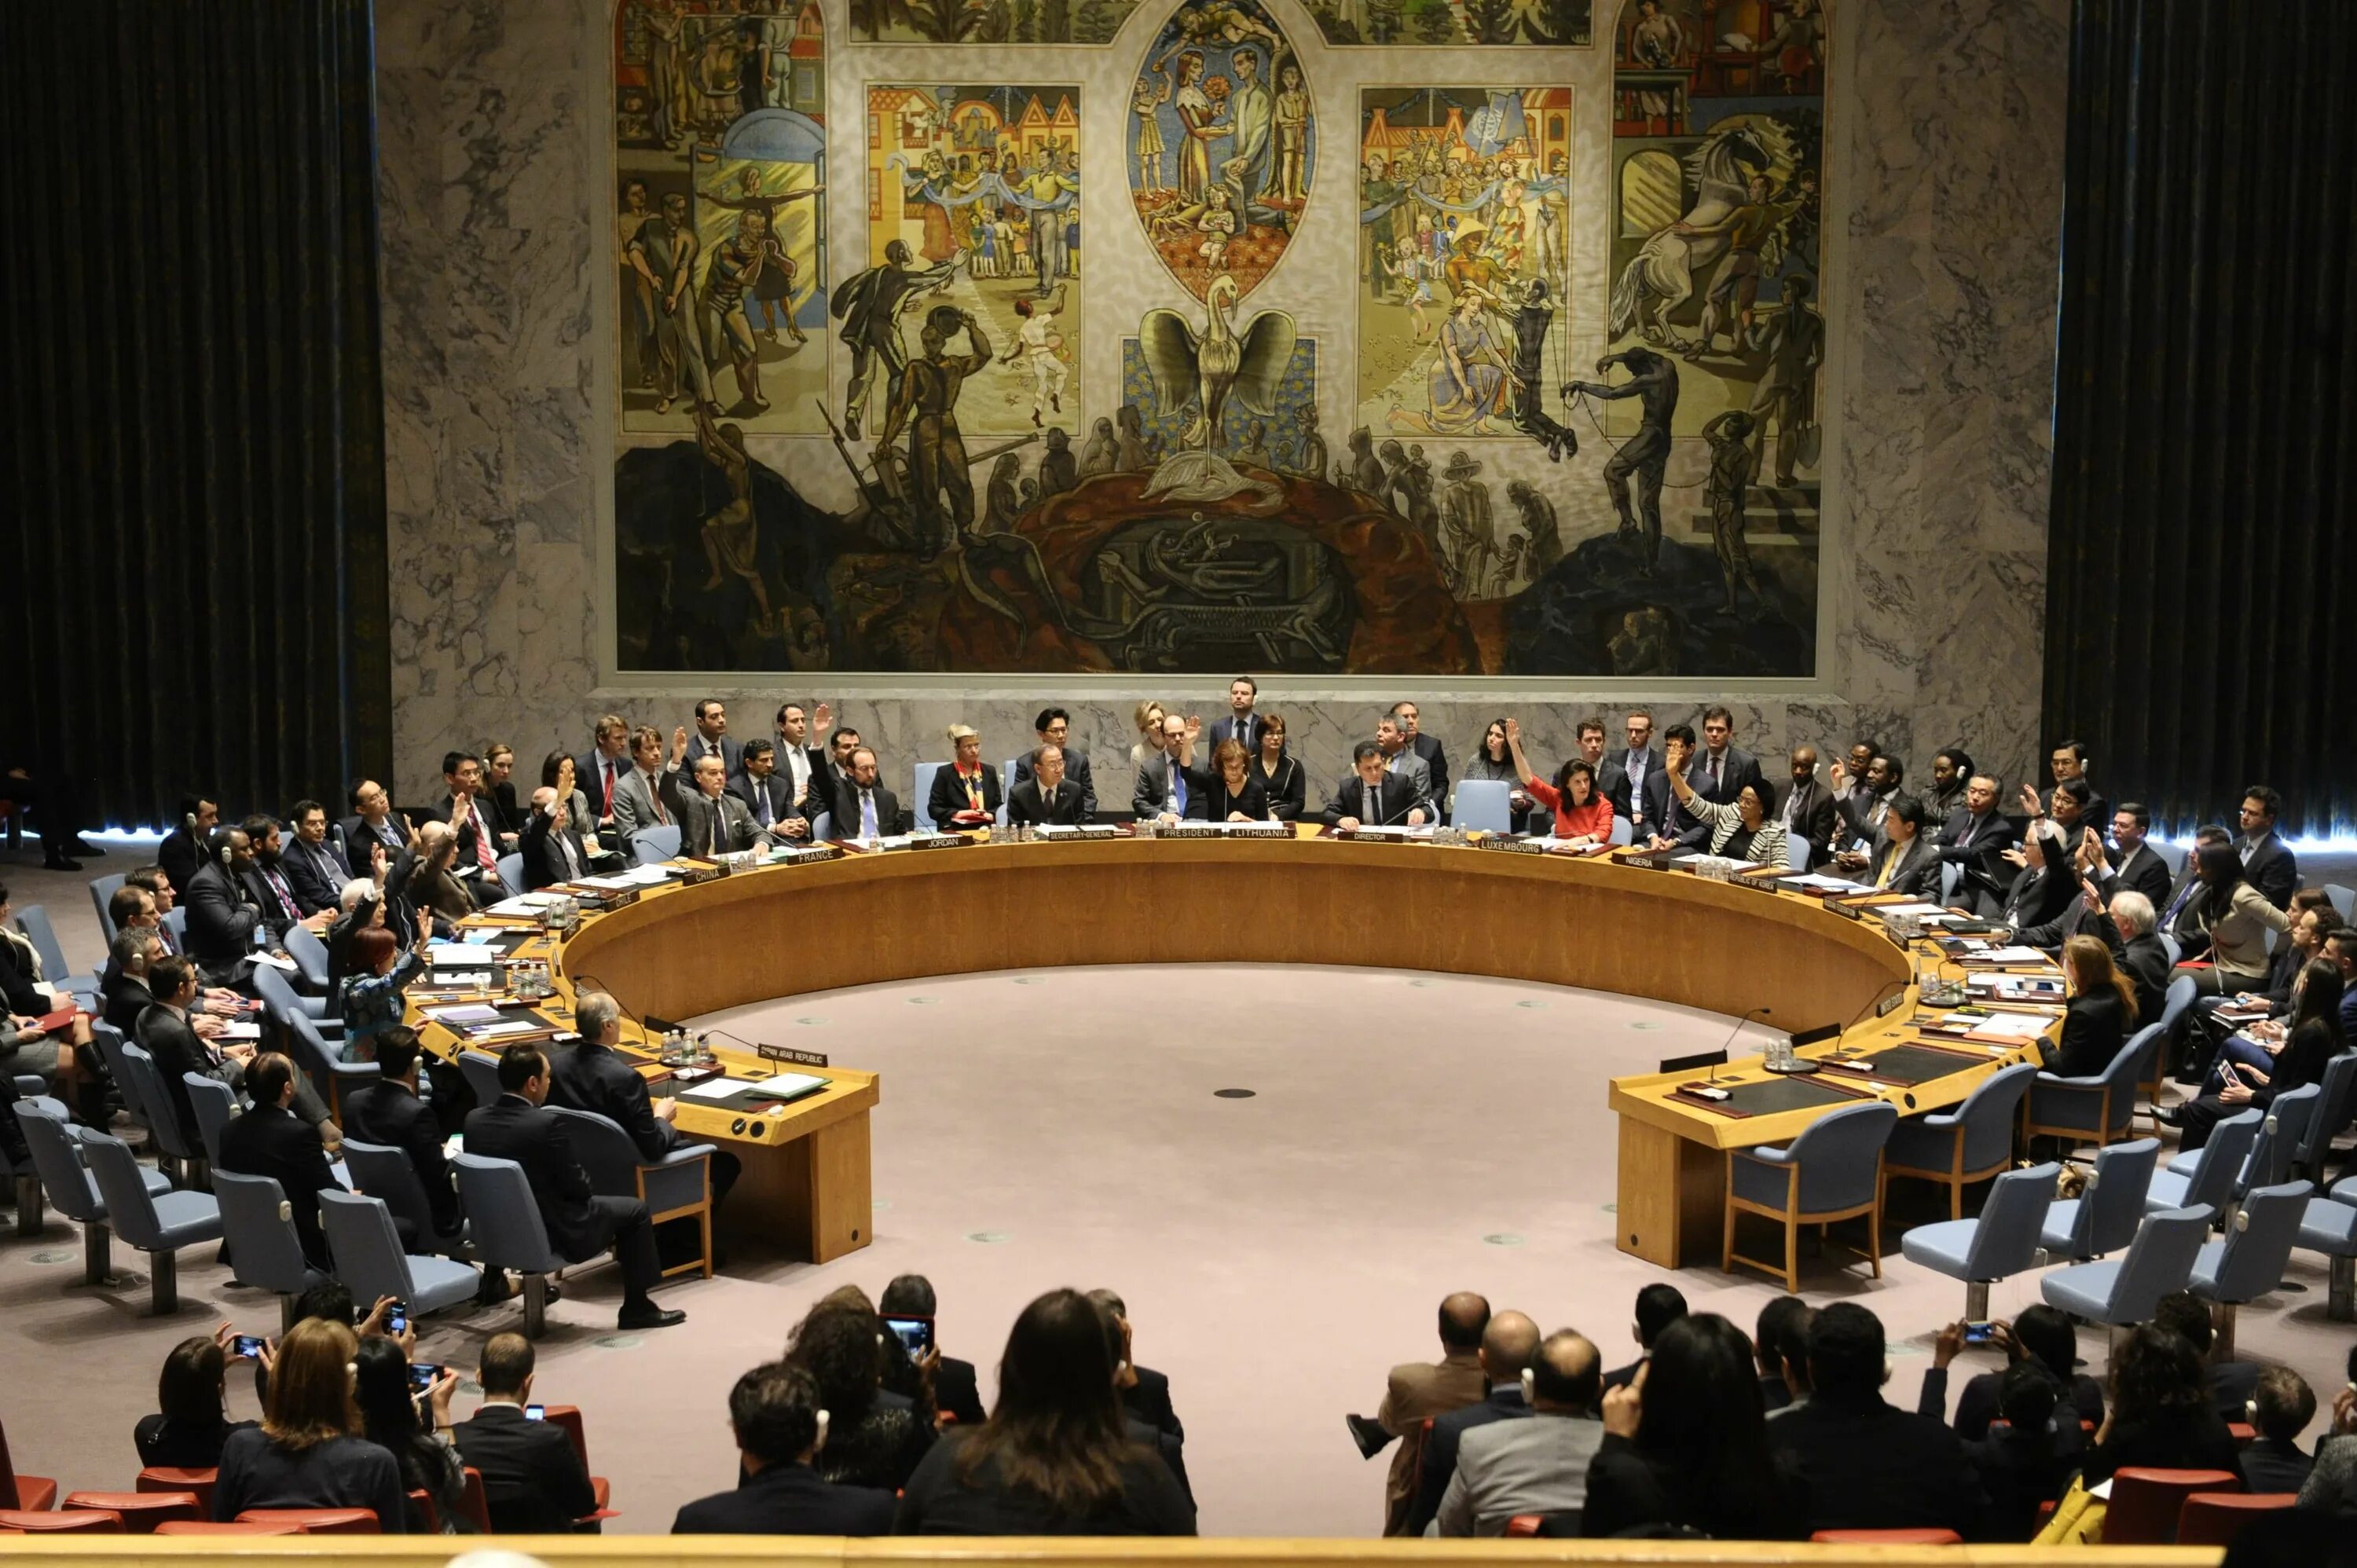 Заседание оон по украине. Зал совета безопасности ООН. Зал заседаний совета безопасности ООН. Зал заседаний Совбеза ООН. Заседание совета безопасности ООН.